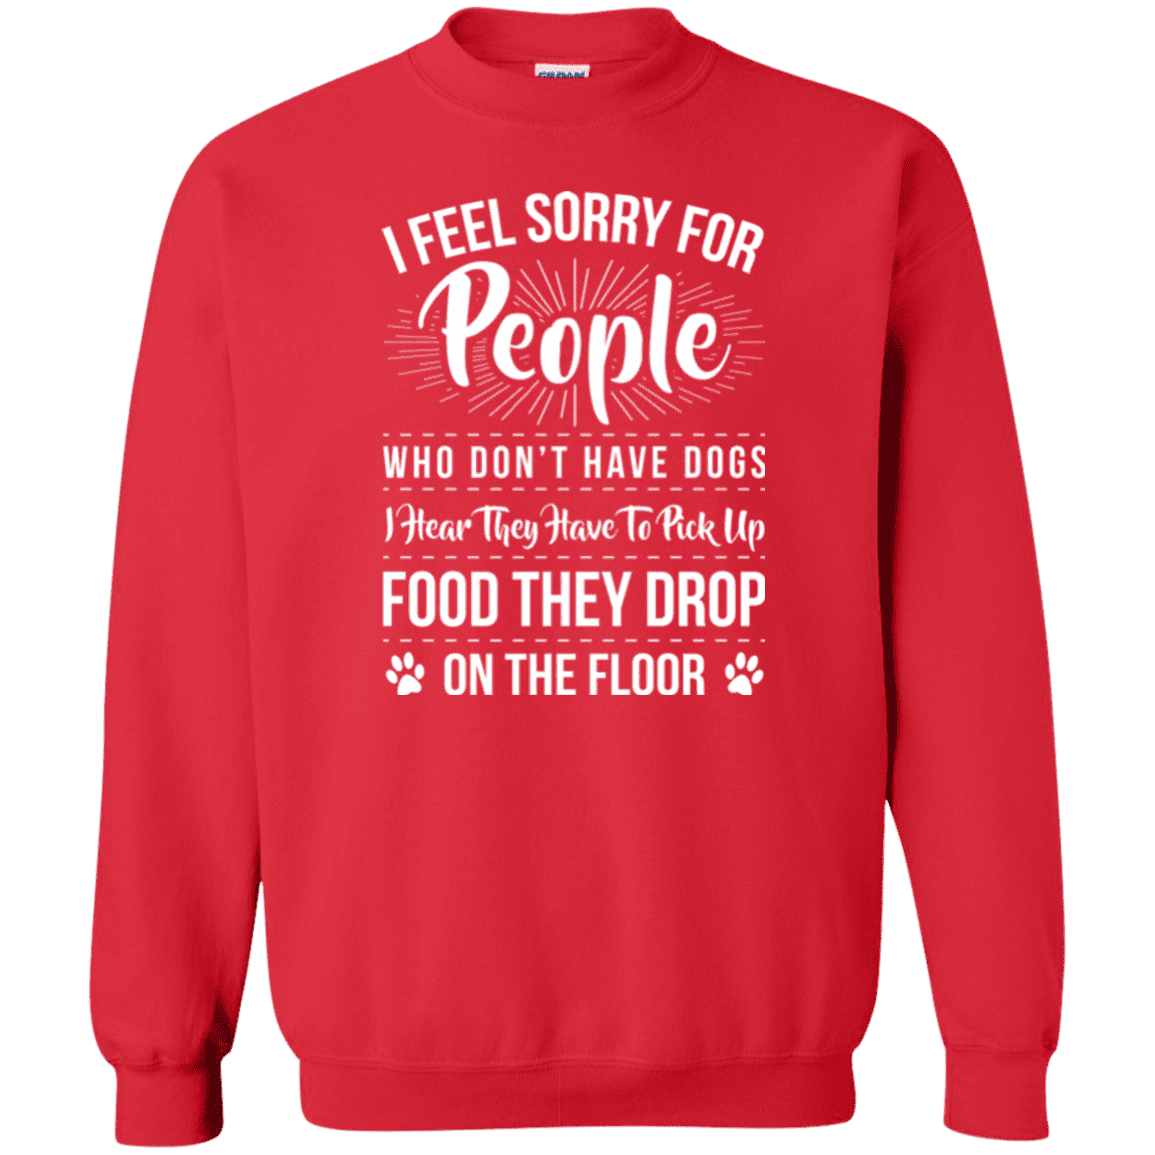 I Feel Sorry For People - Sweatshirt.